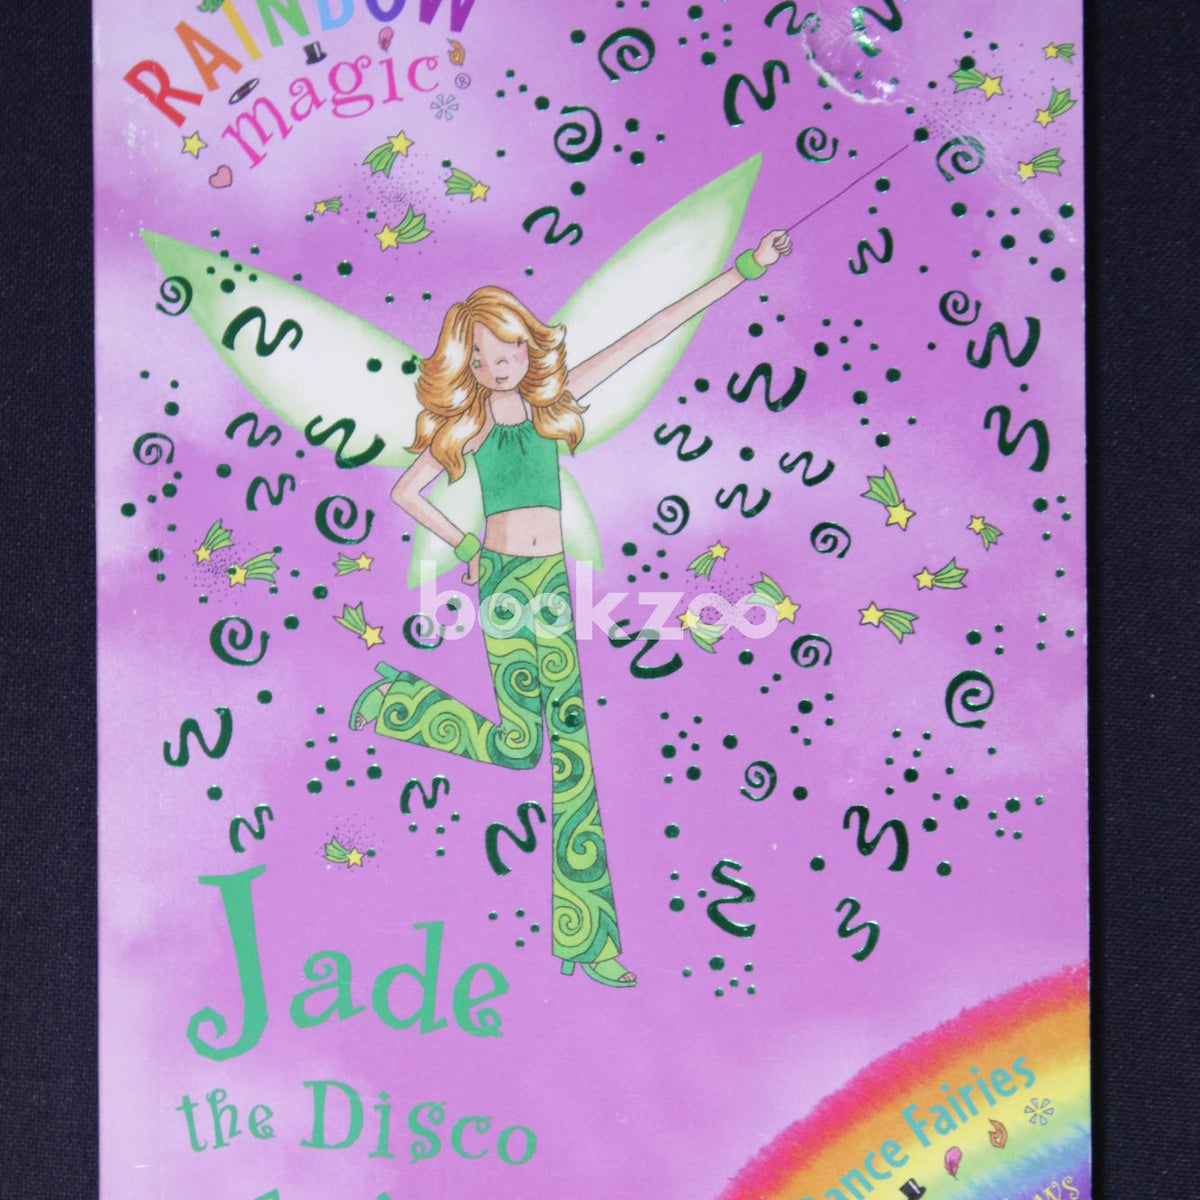 Jade the Disco Fairy by Daisy Meadows